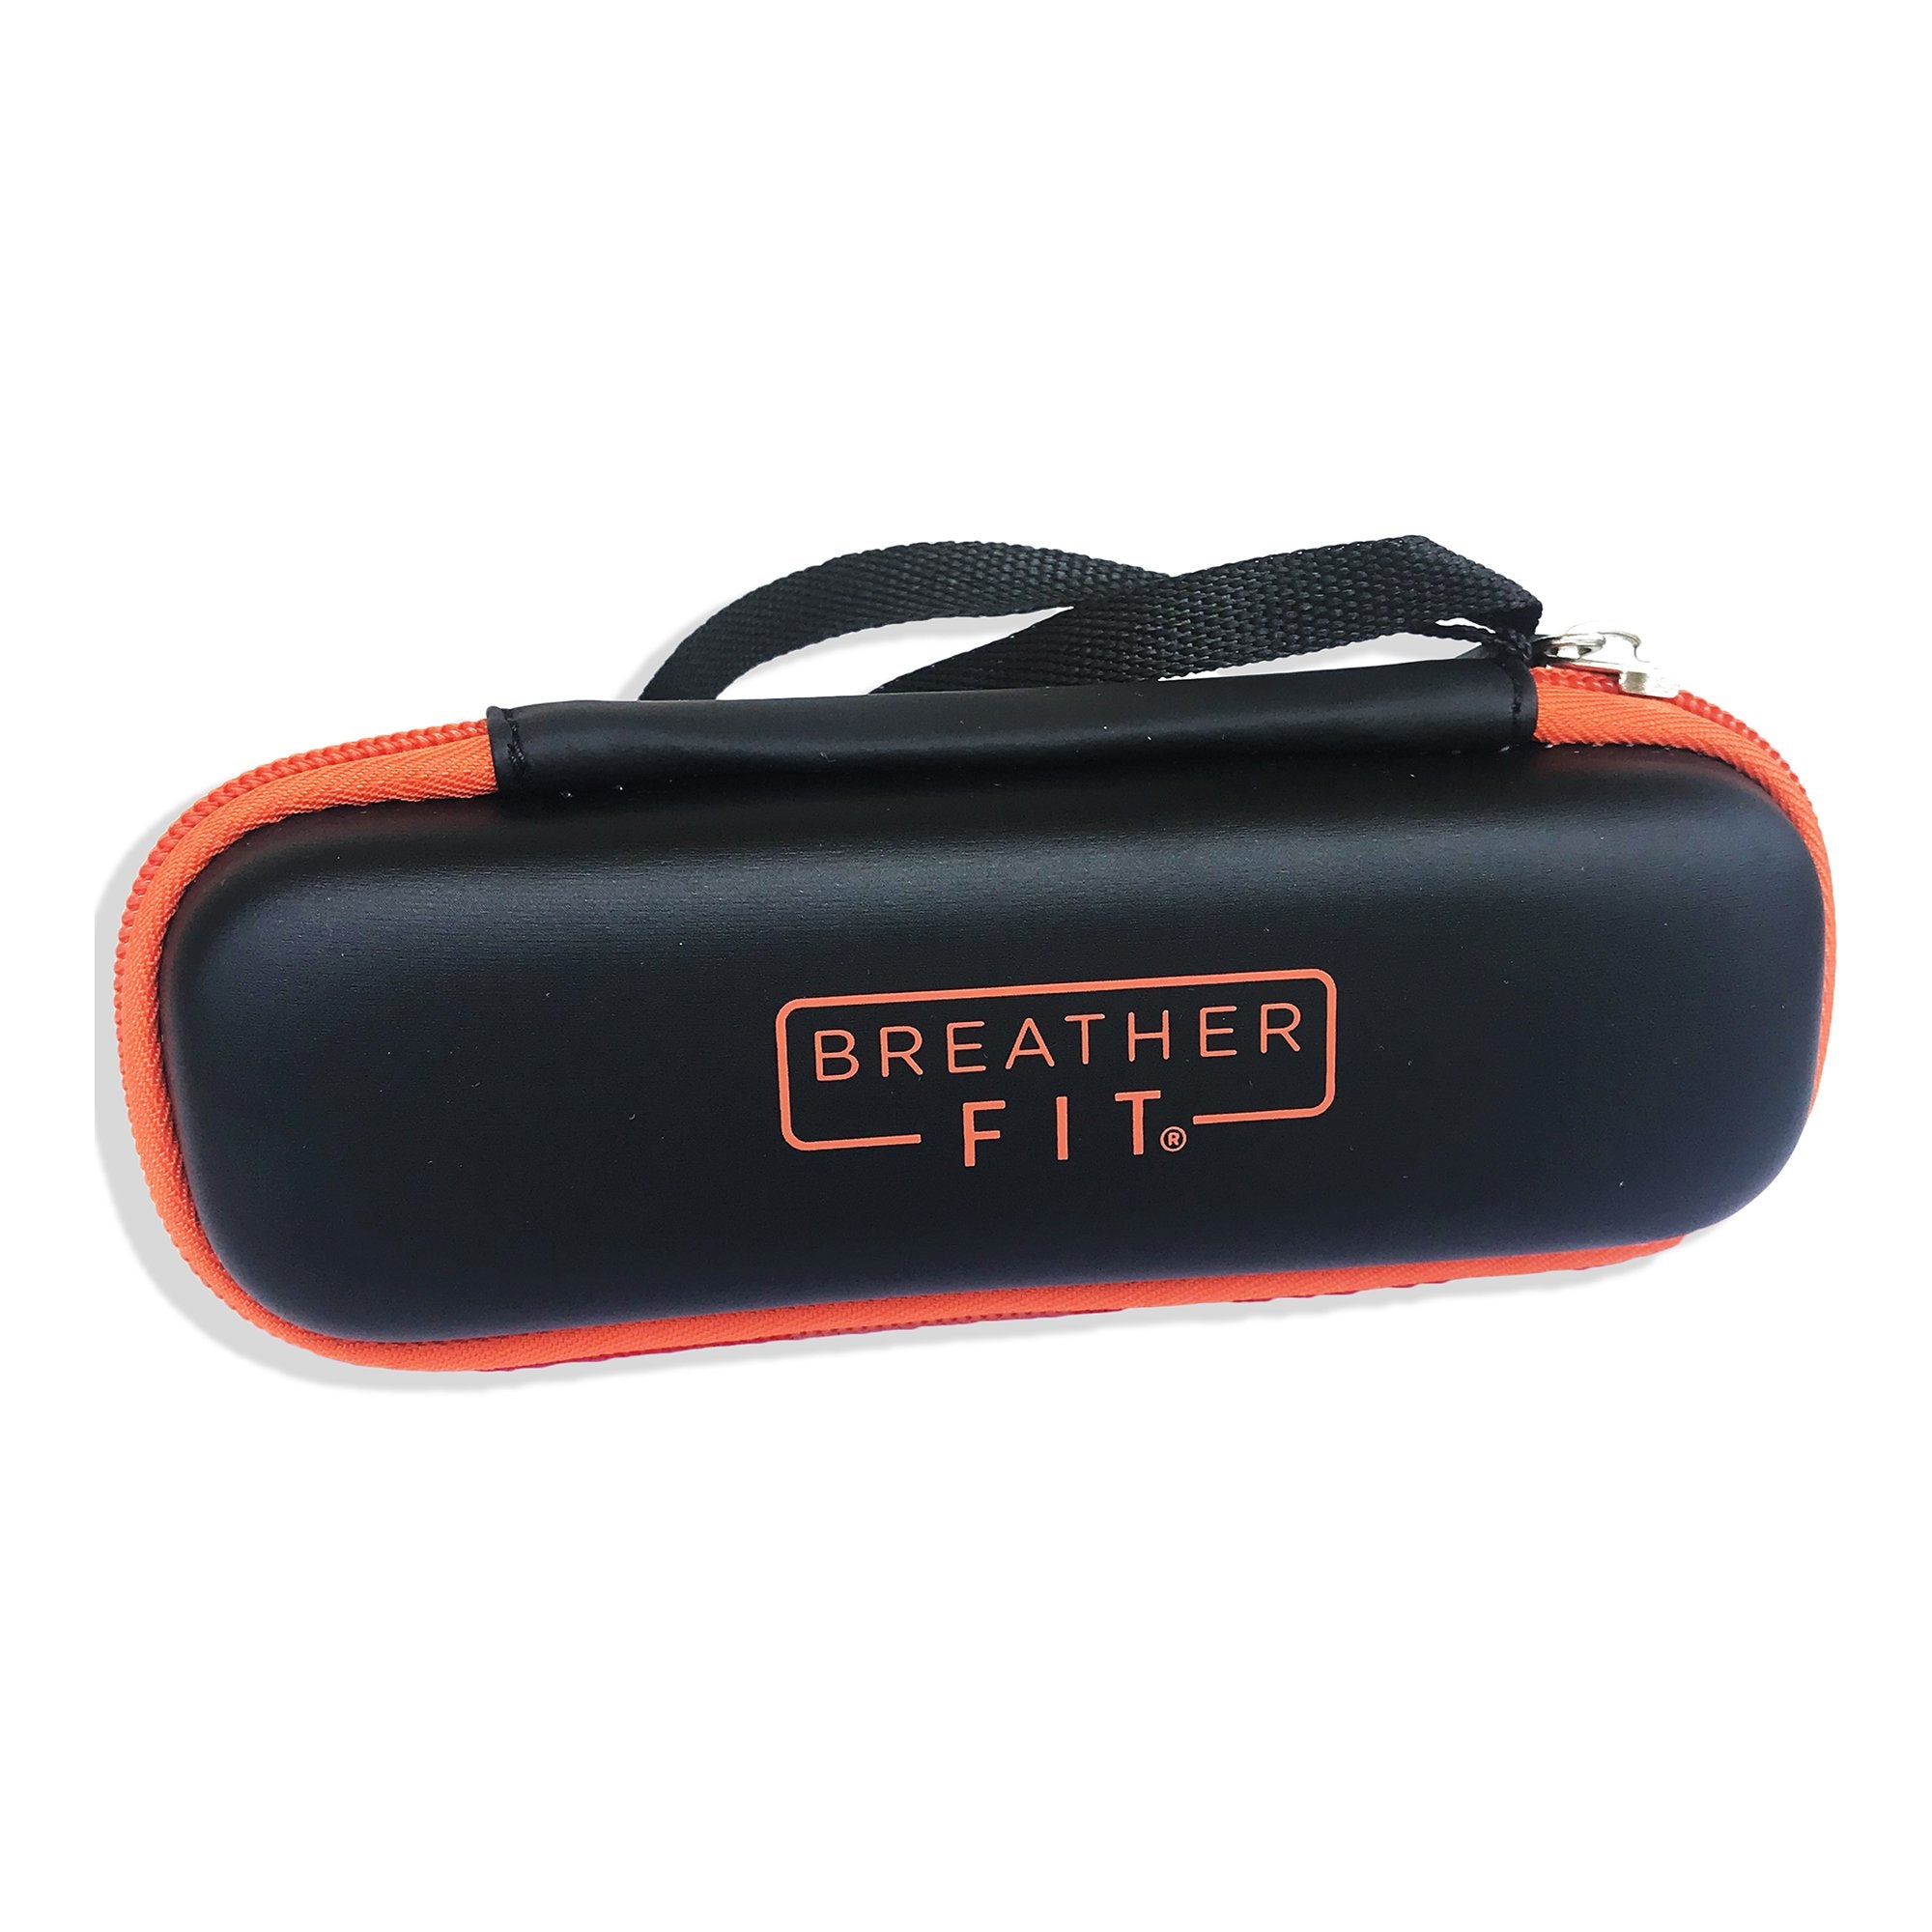 Breather Fit? Travel Case (1 Unit)